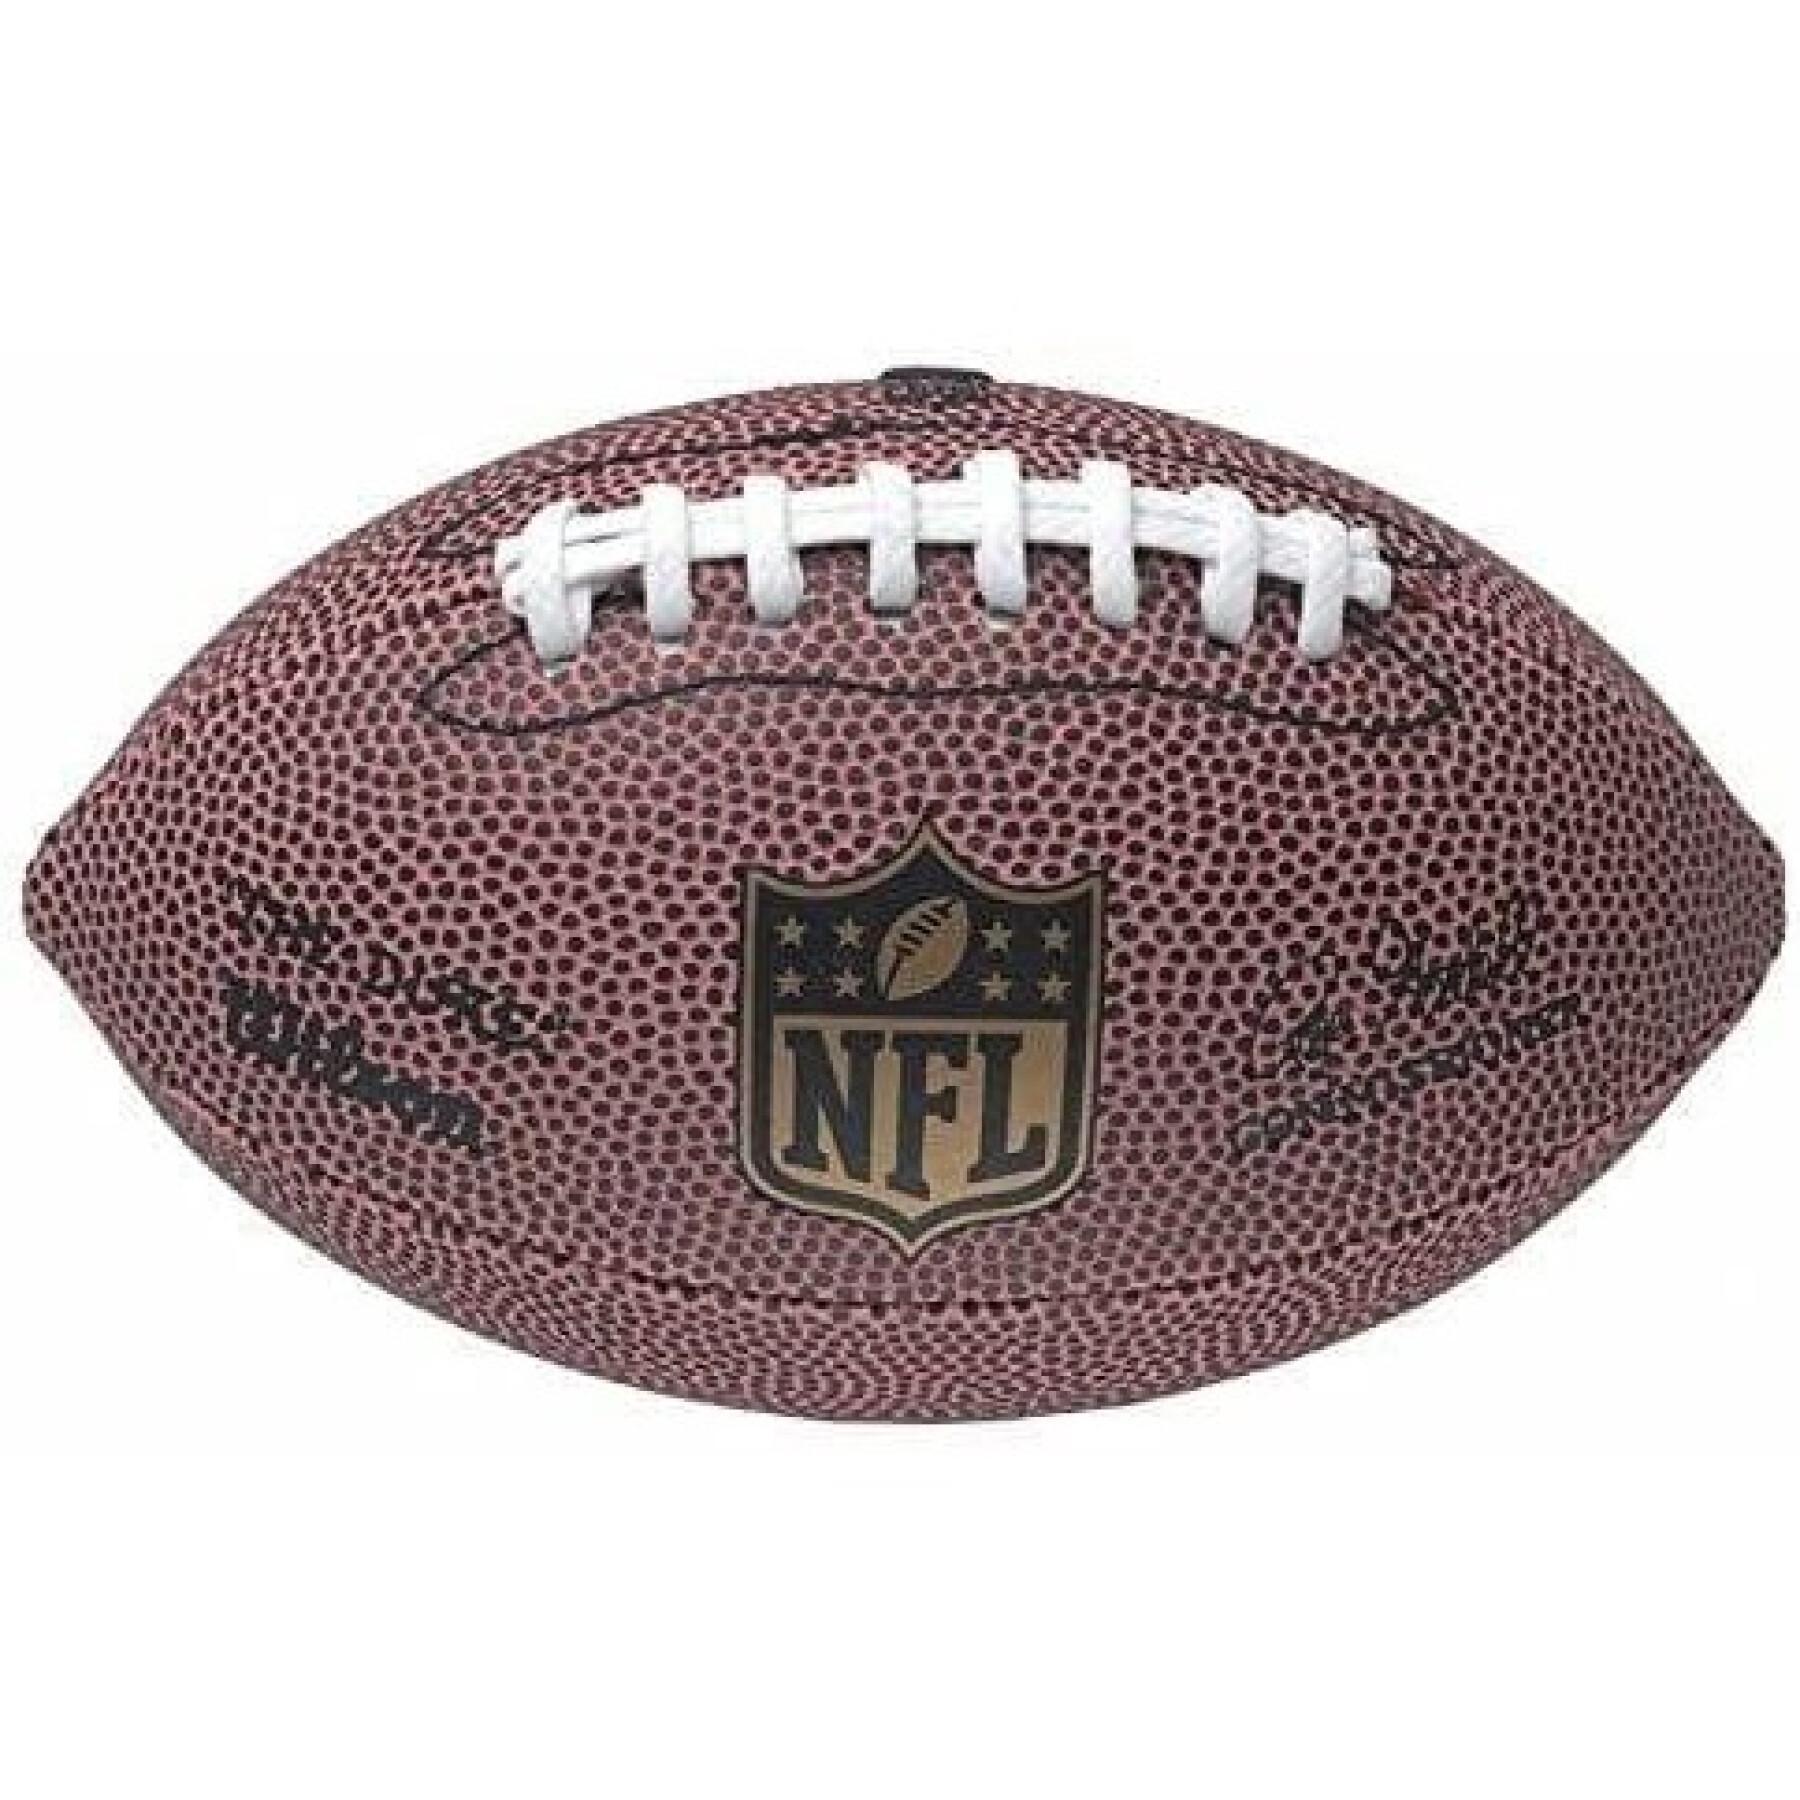 Ballon Wilson NFL Micro